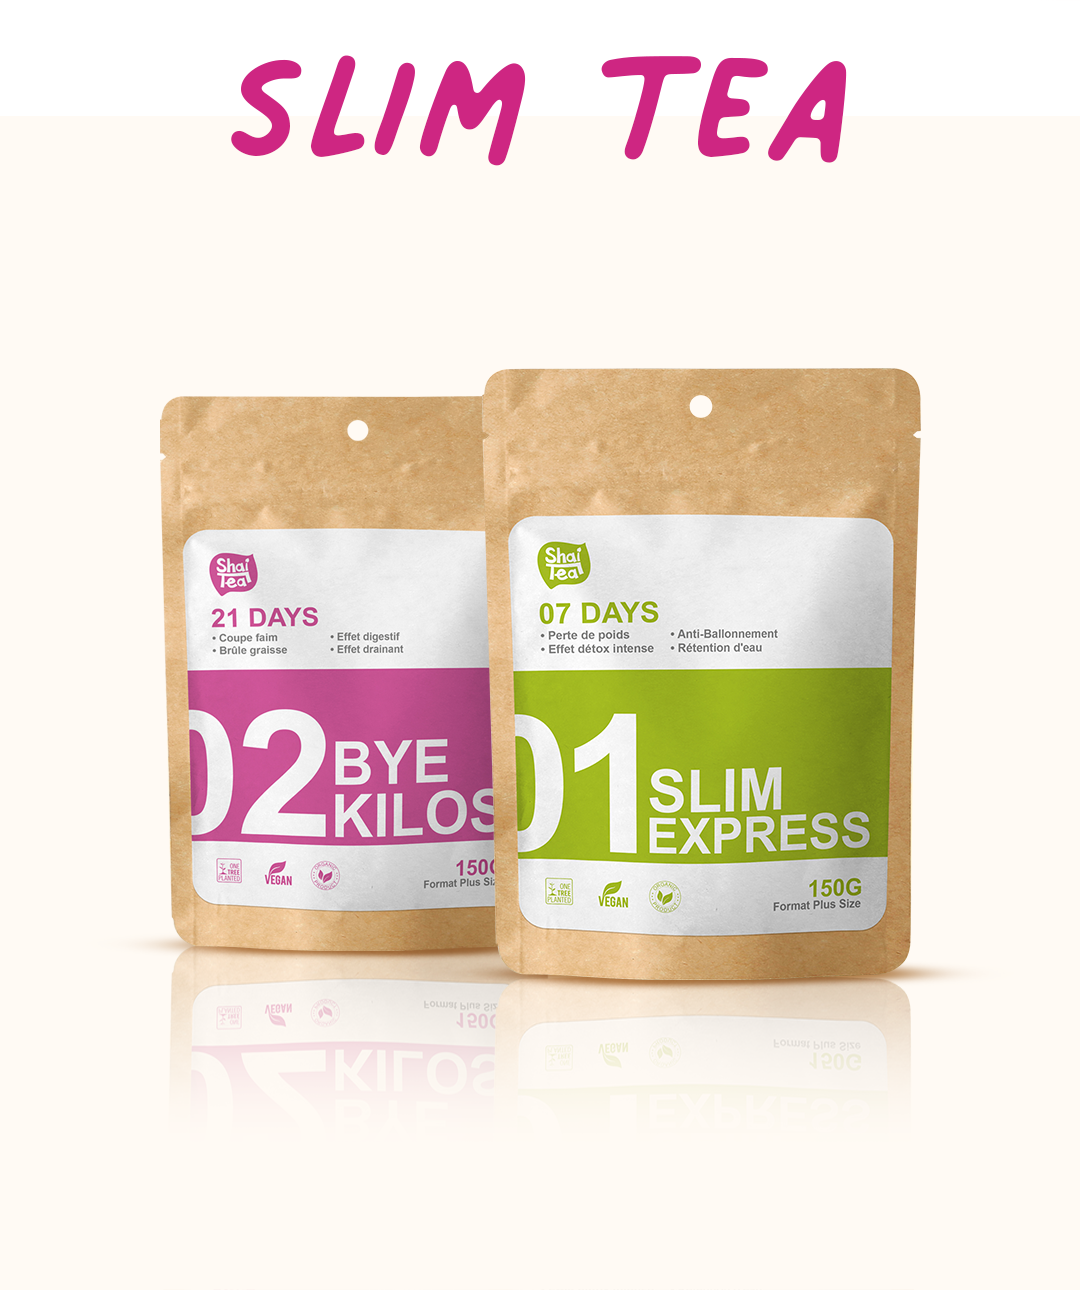 Slim Tea Bestea 28 jours – Shaitea